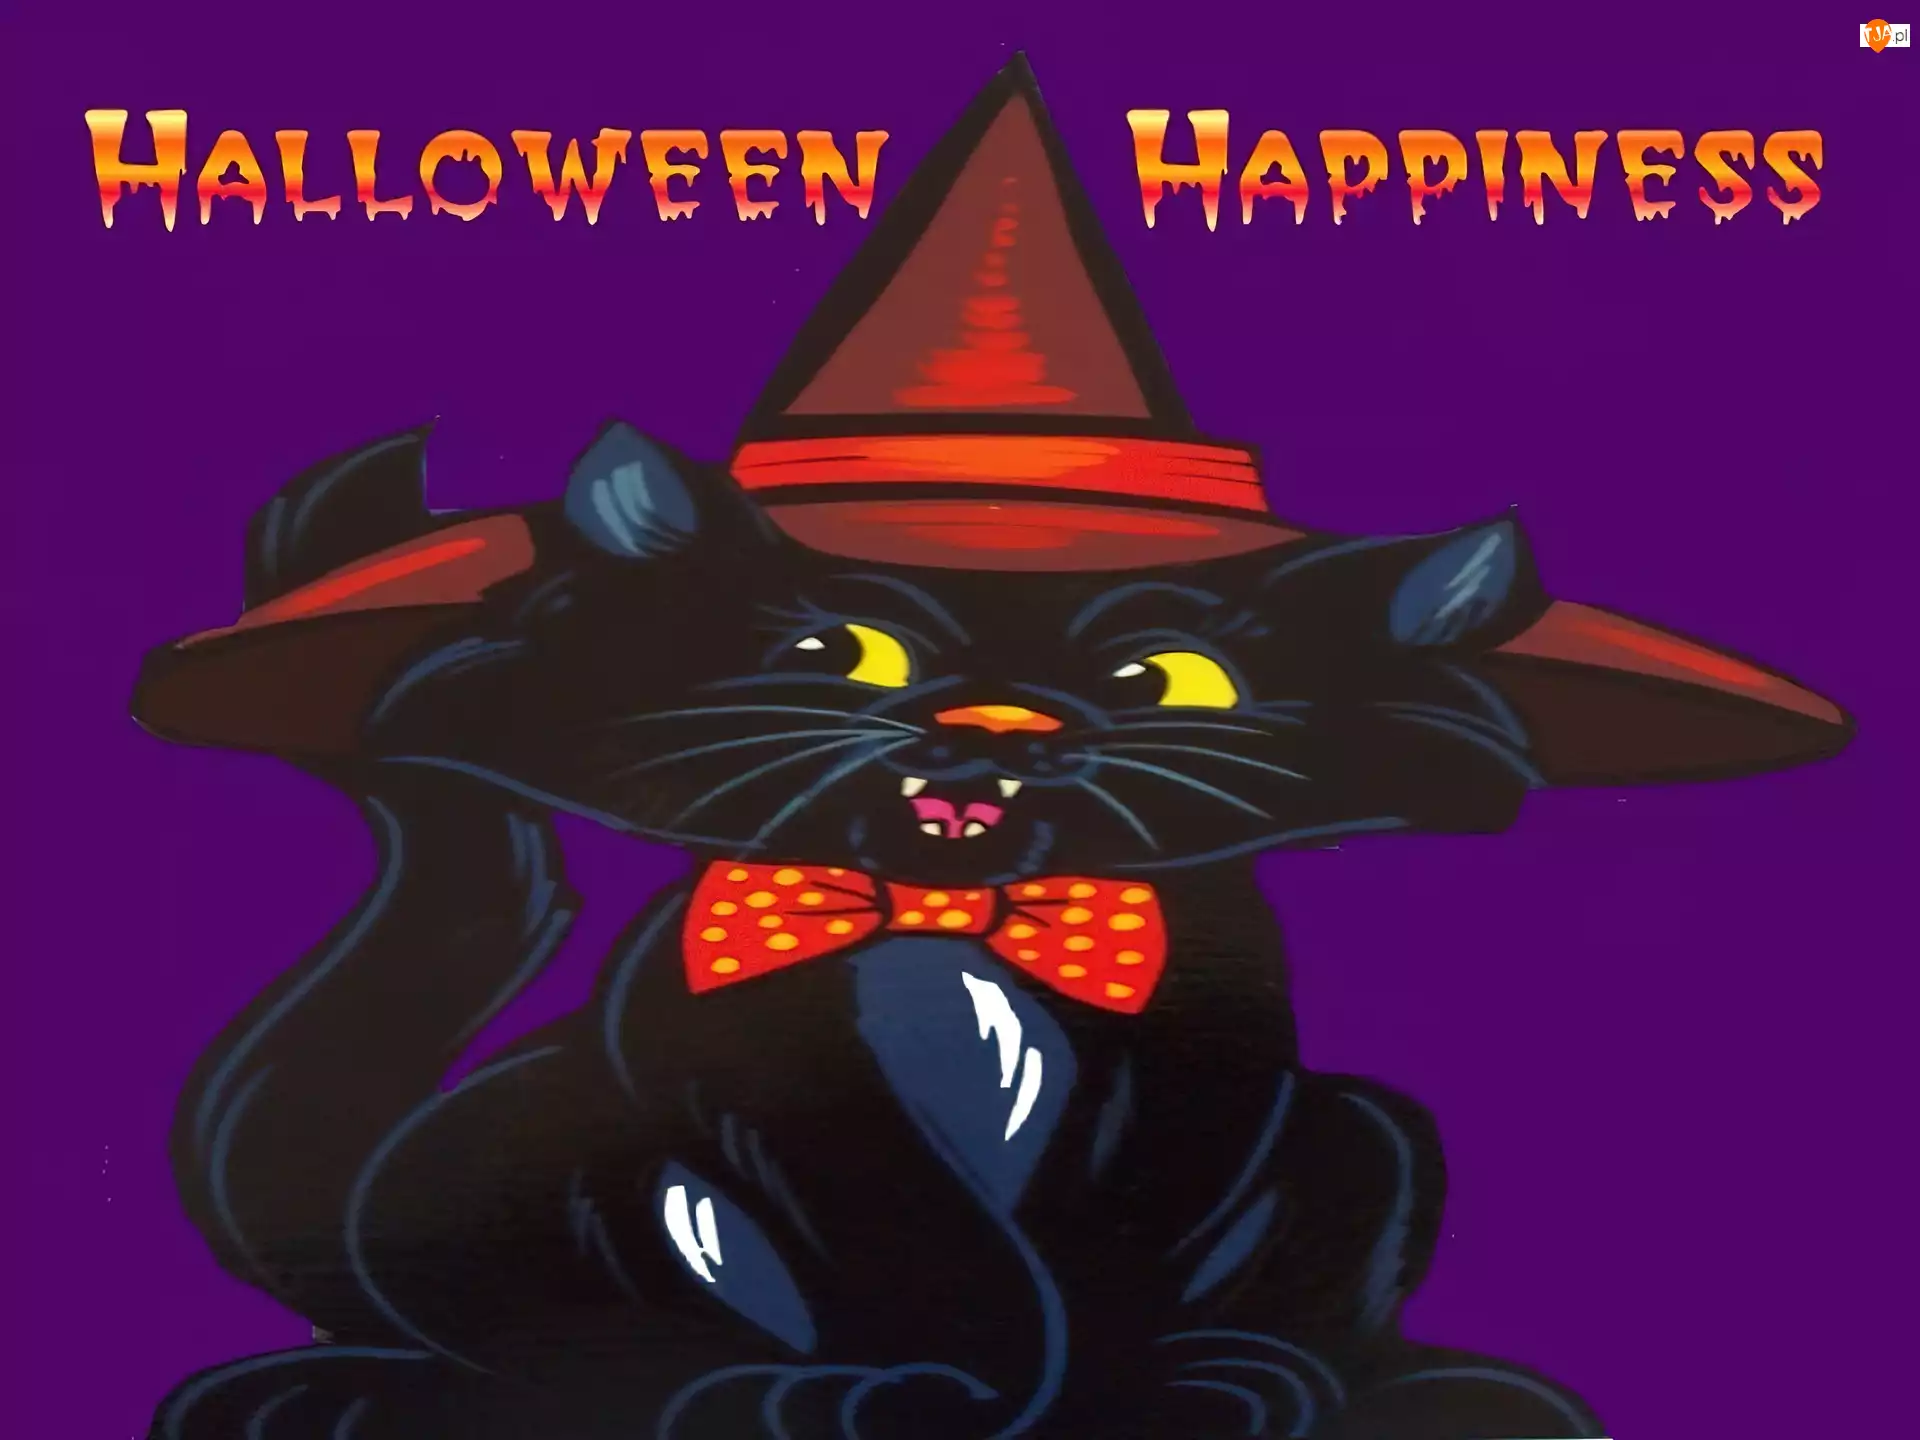 czarny kot, Halloween